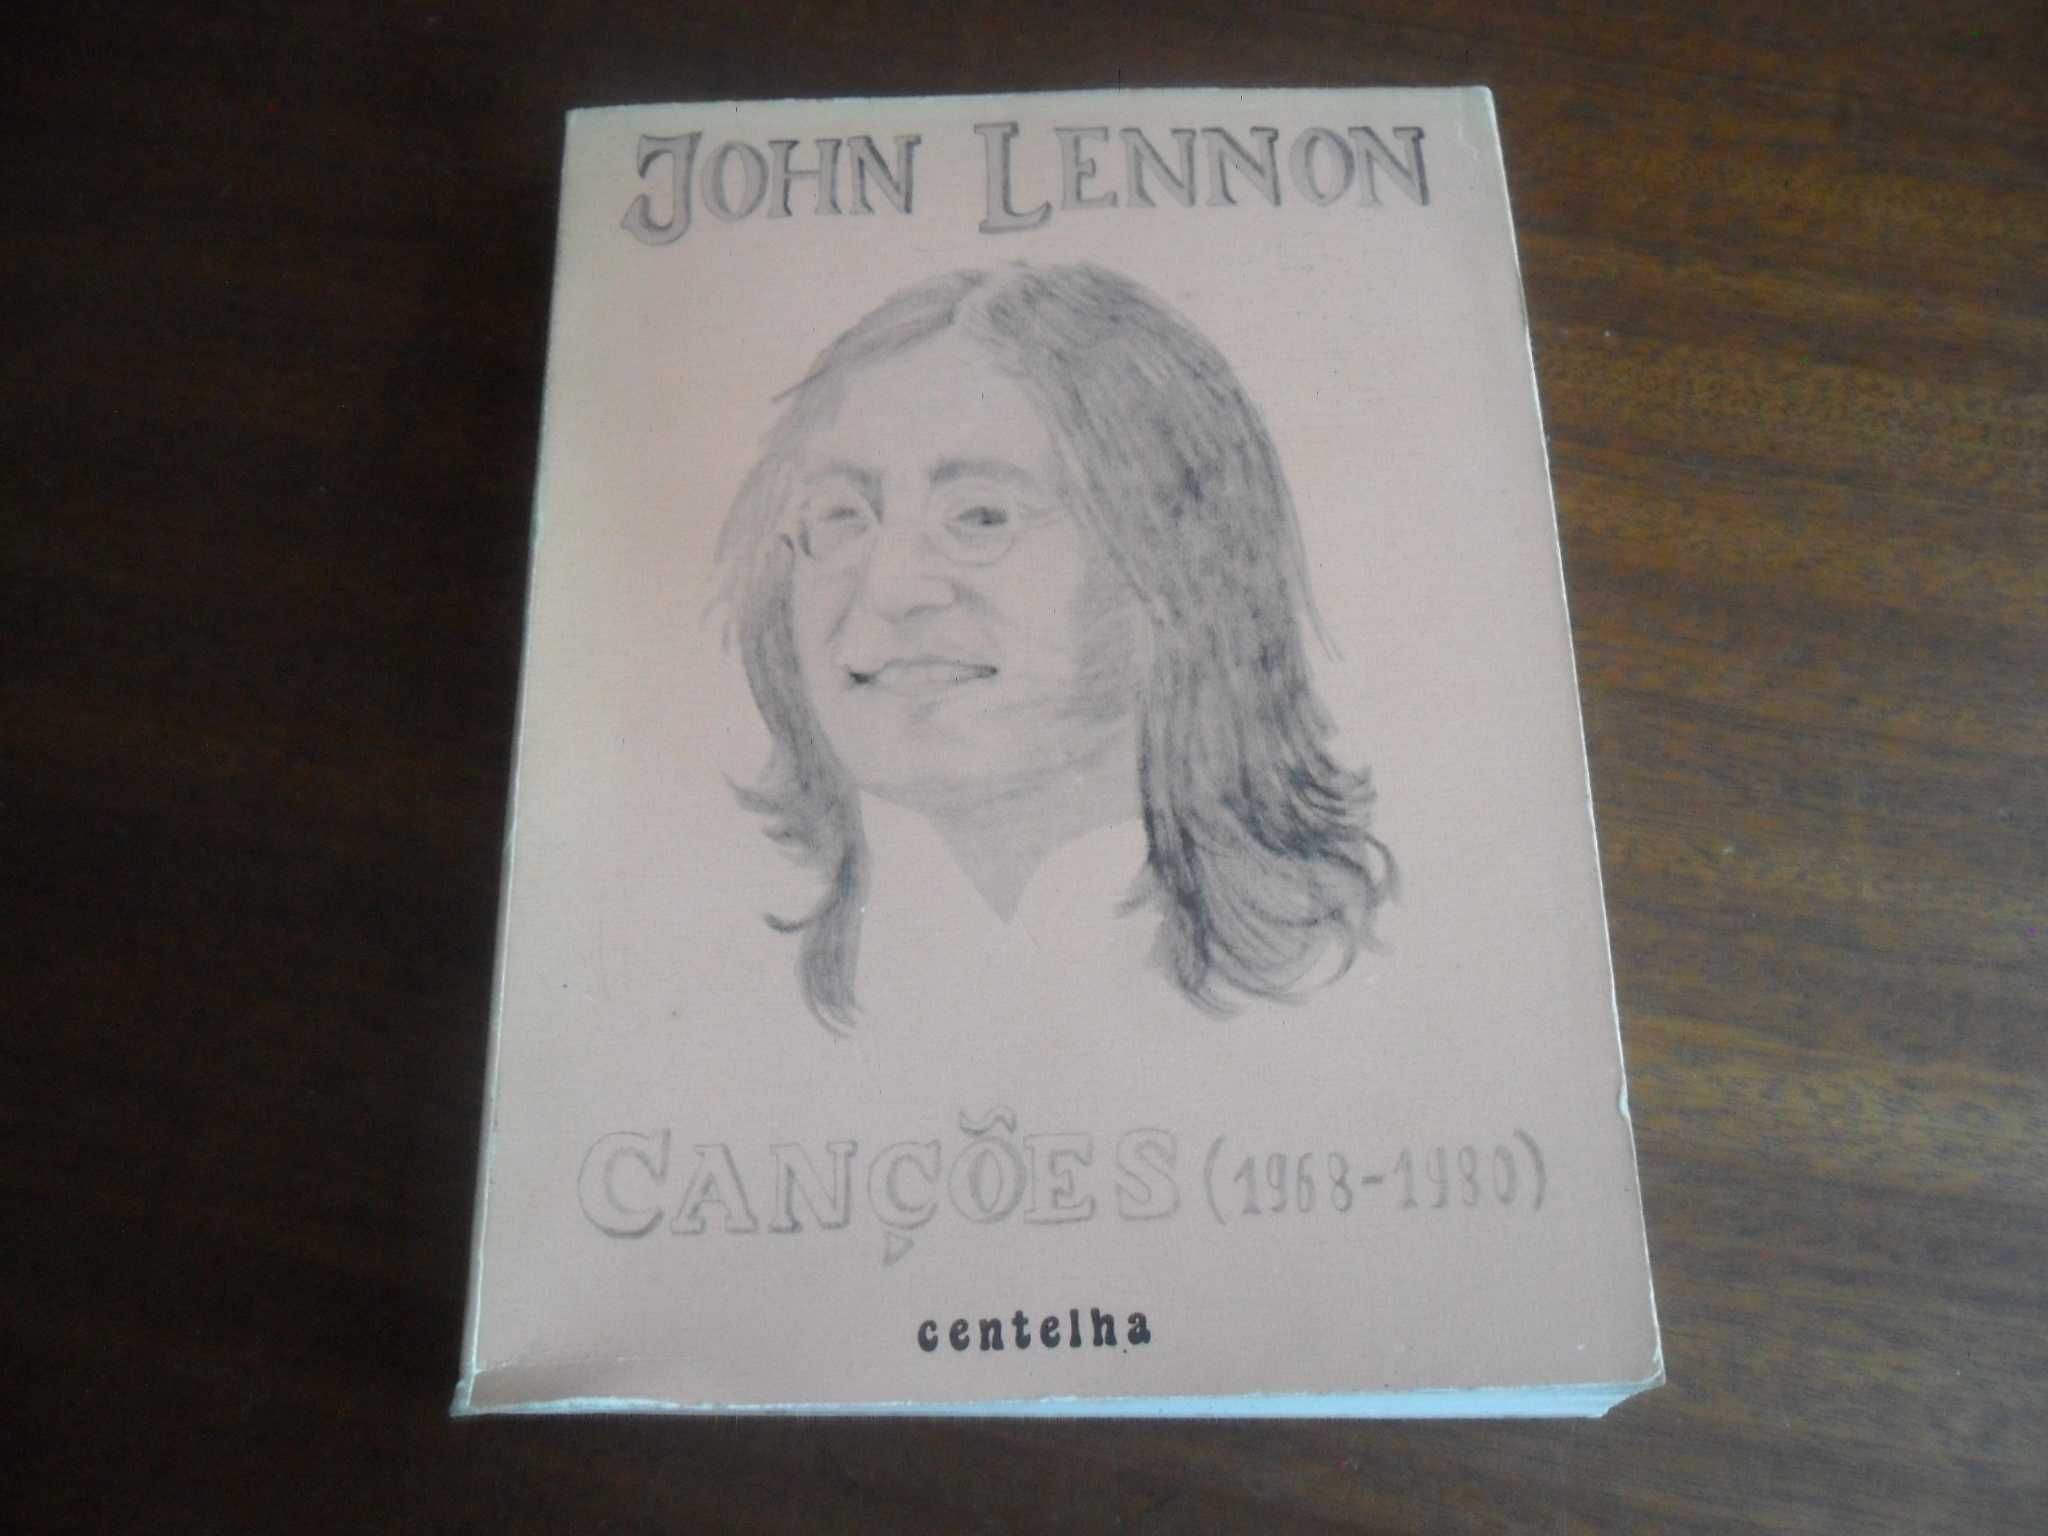 "Canções (1968 a 1980) de John Lennon - 1ª Edição de 1982